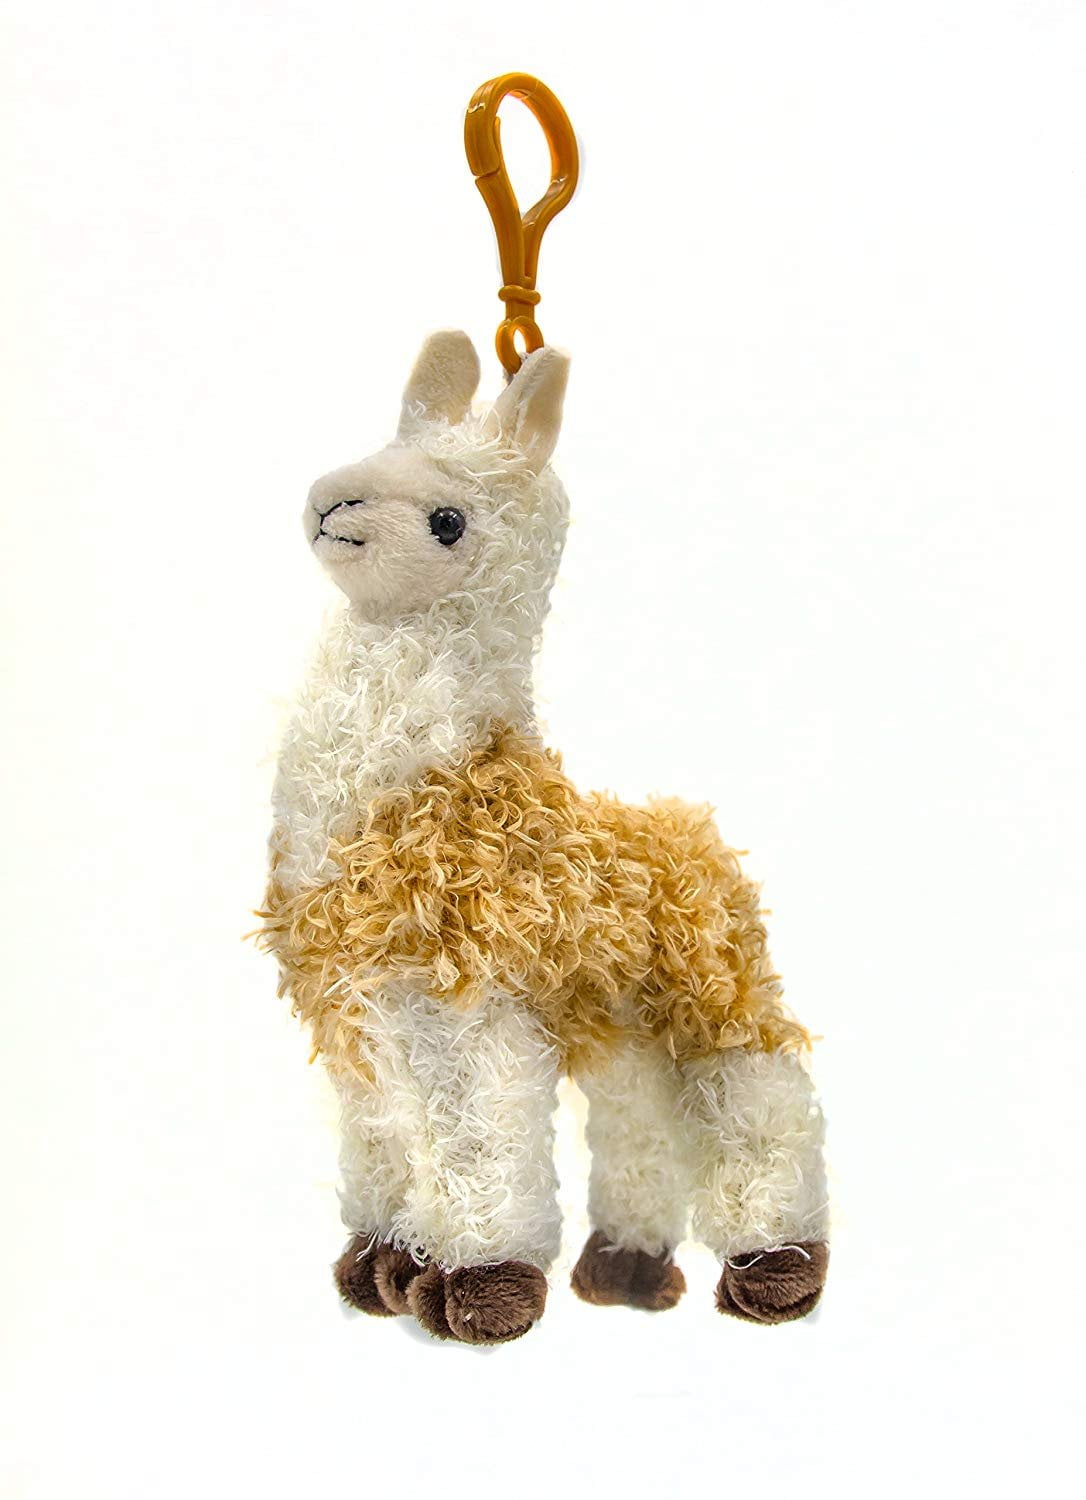 walmart llama stuffed animal